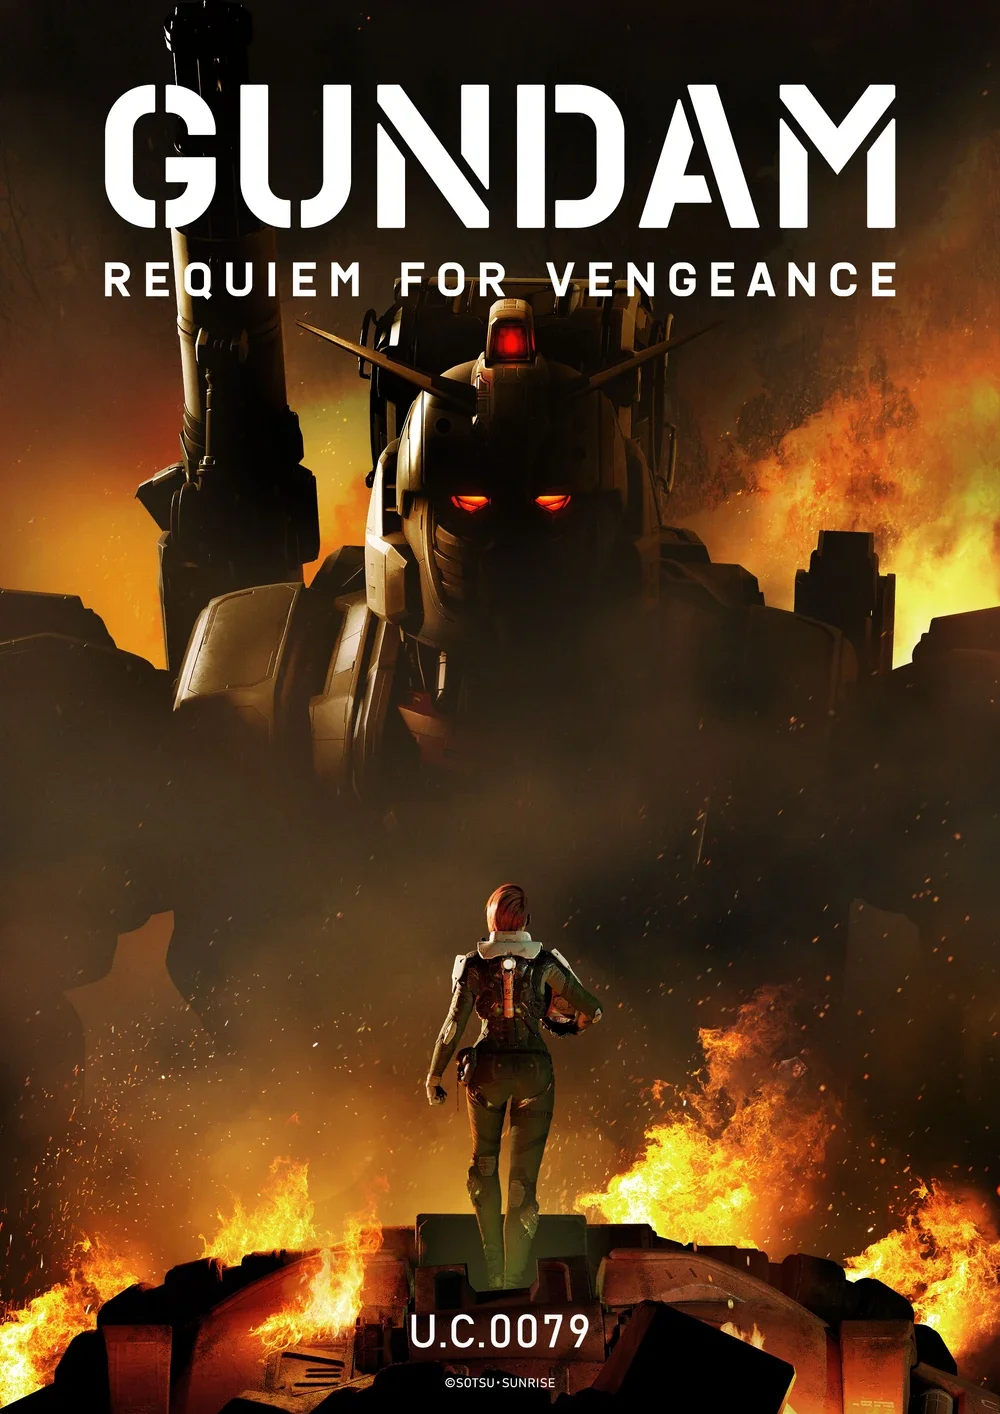 Gundam-_Requiem_for_Vengeance_promo